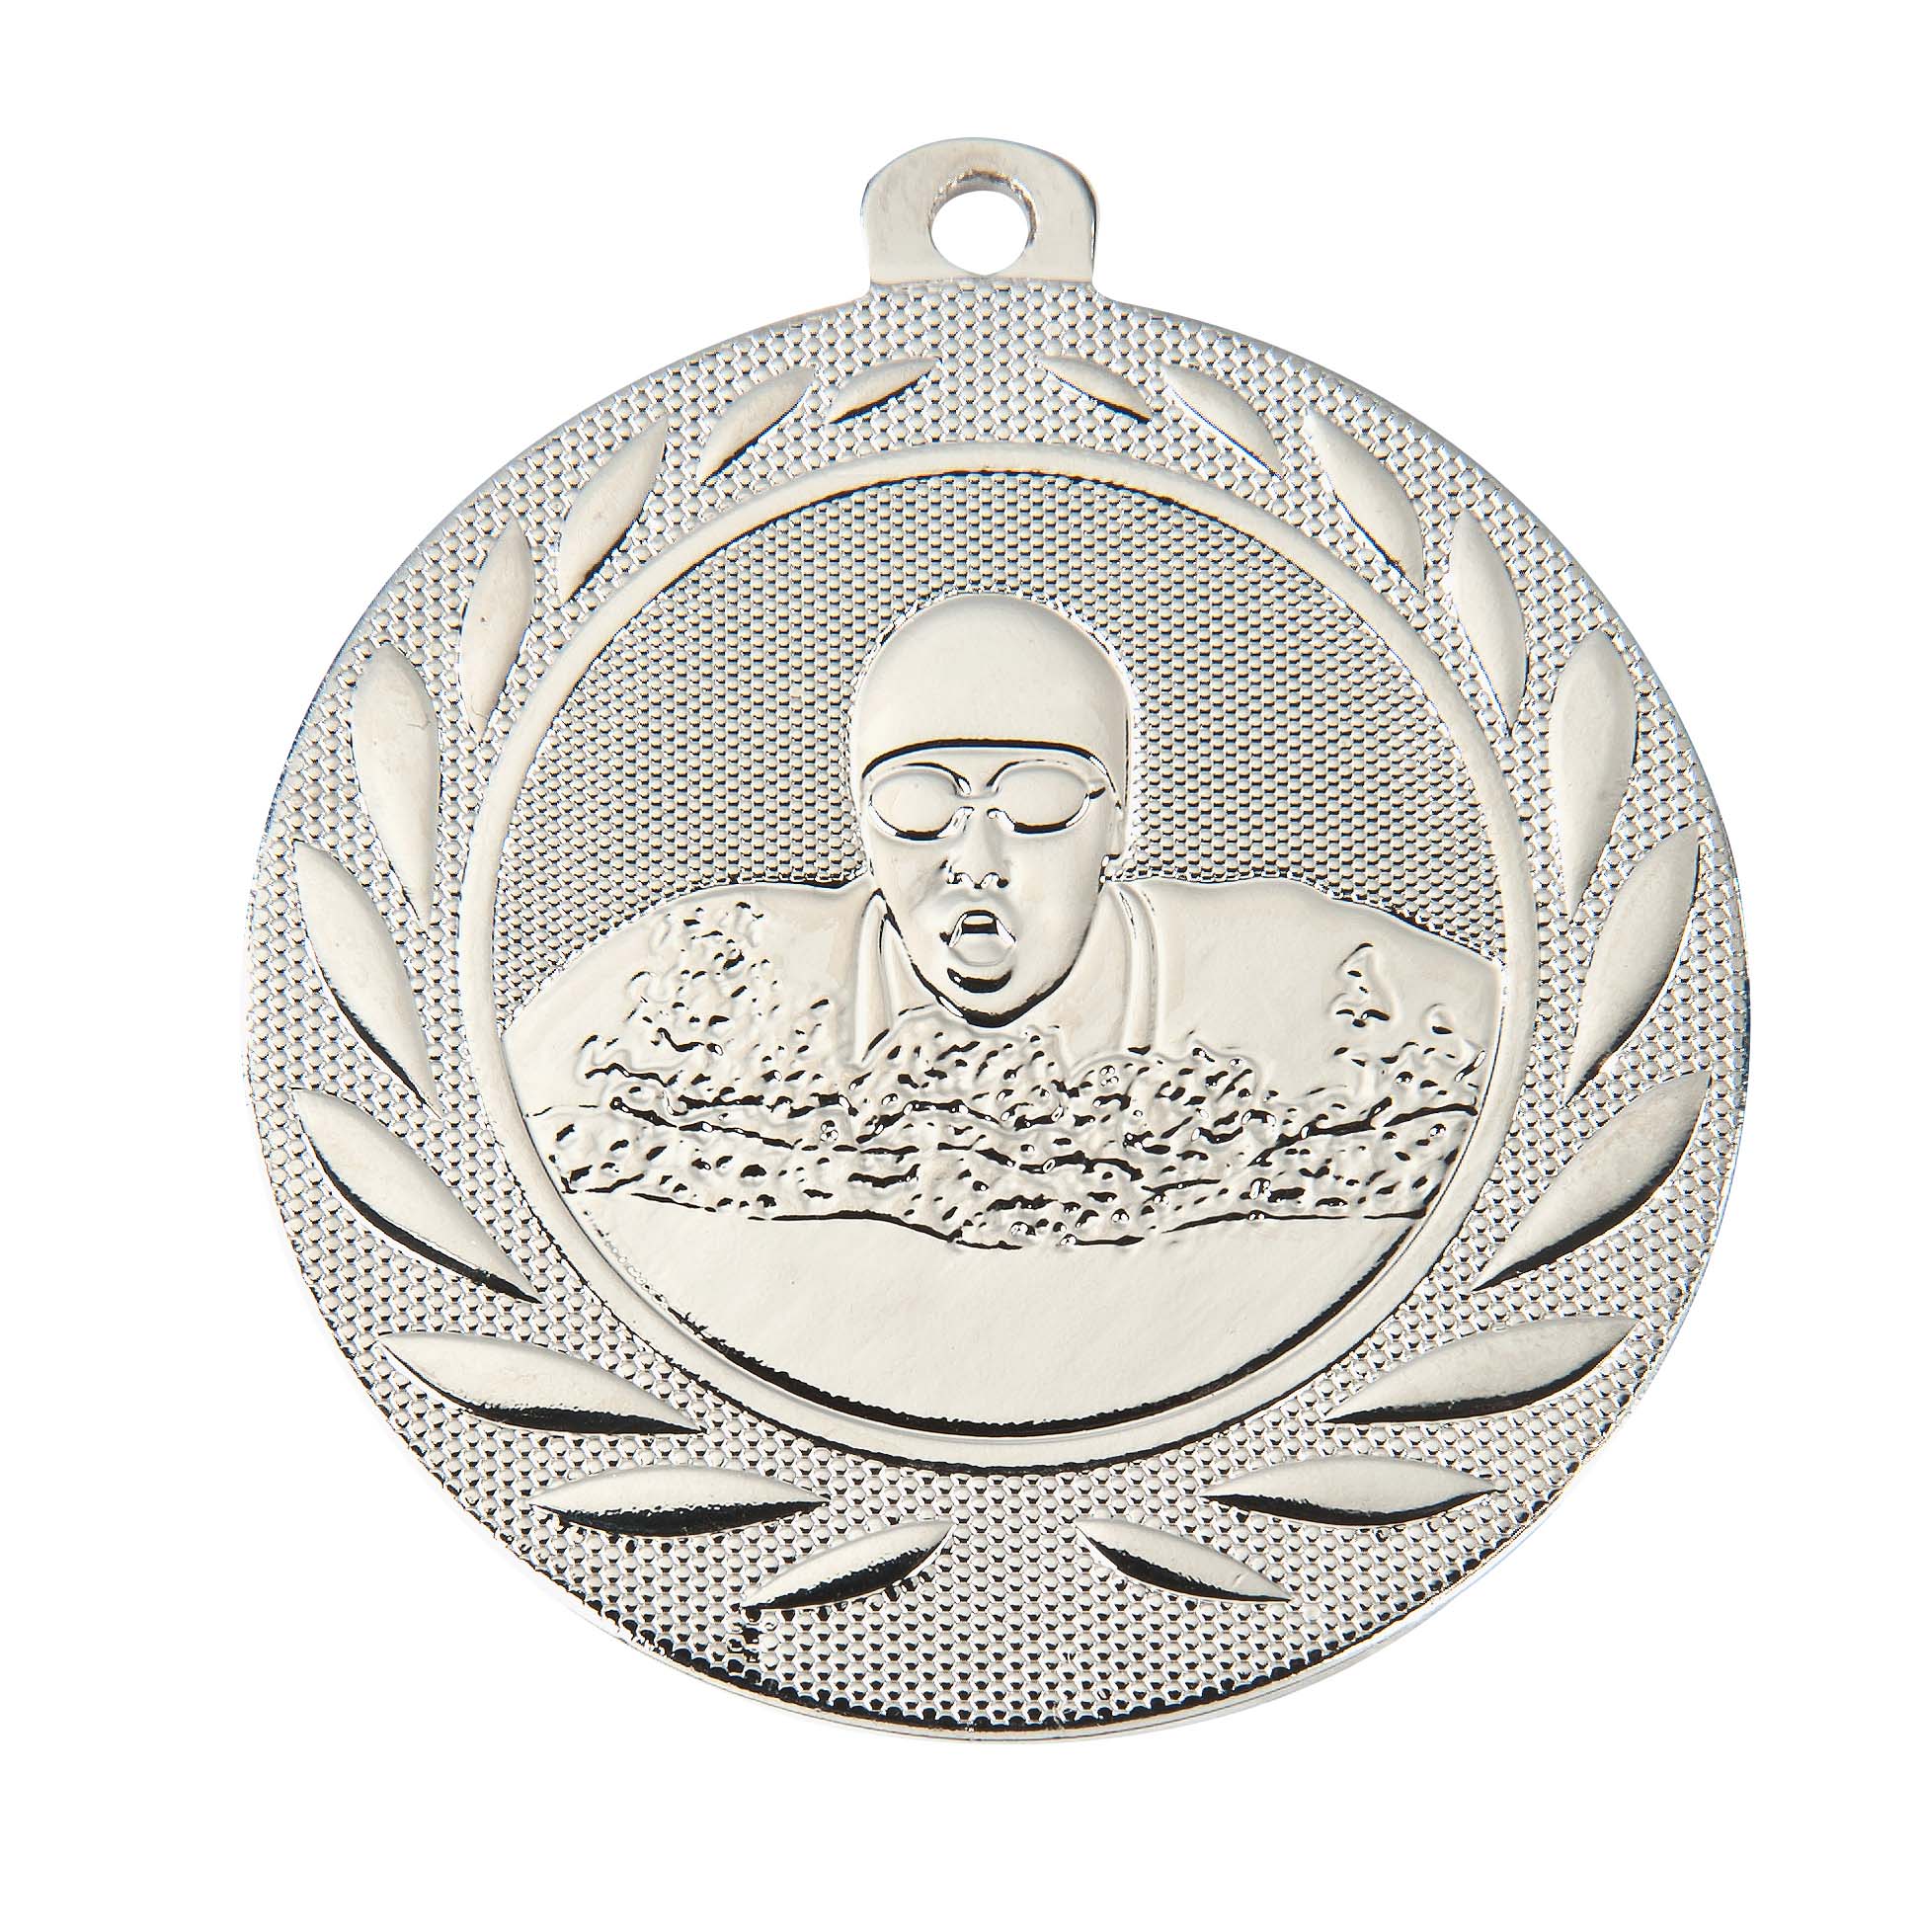 Schwimm-Medaille DI5000H inkl. Band und Beschriftung Silber Fertig montiert gegen Aufpreis